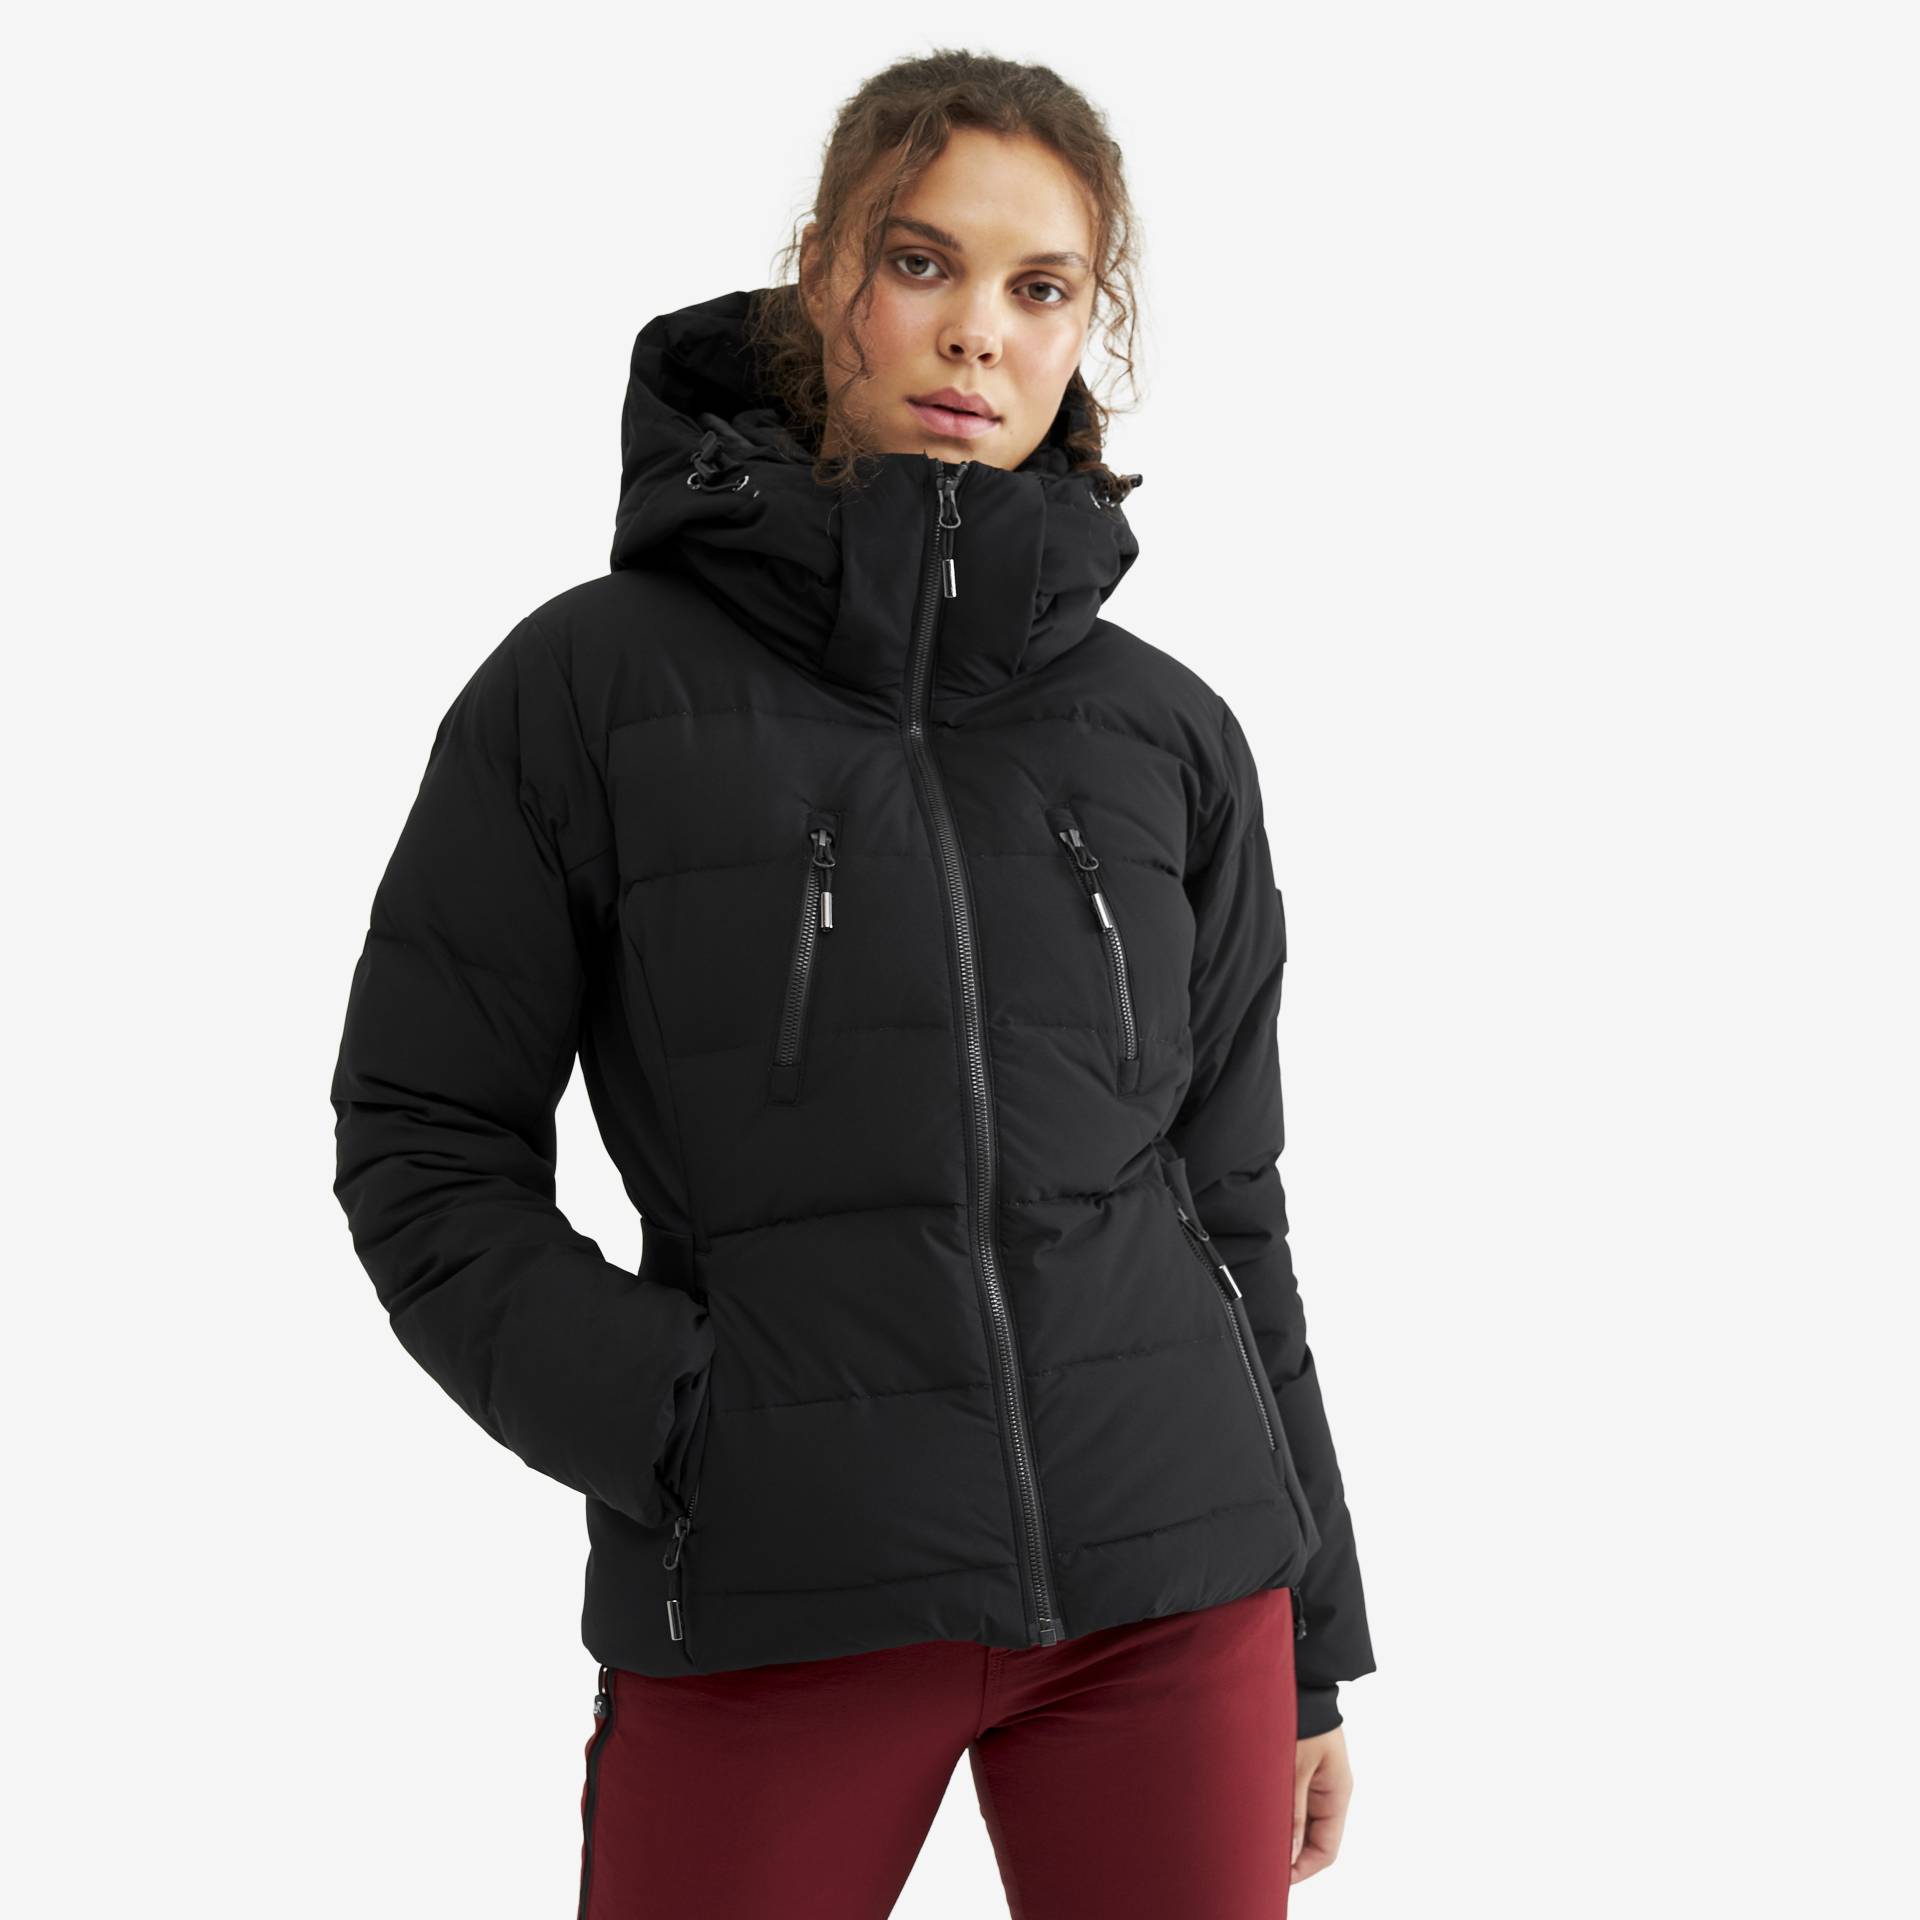 Igloo Jacket Damen Black, Größe:XS - Skijacken von RevolutionRace